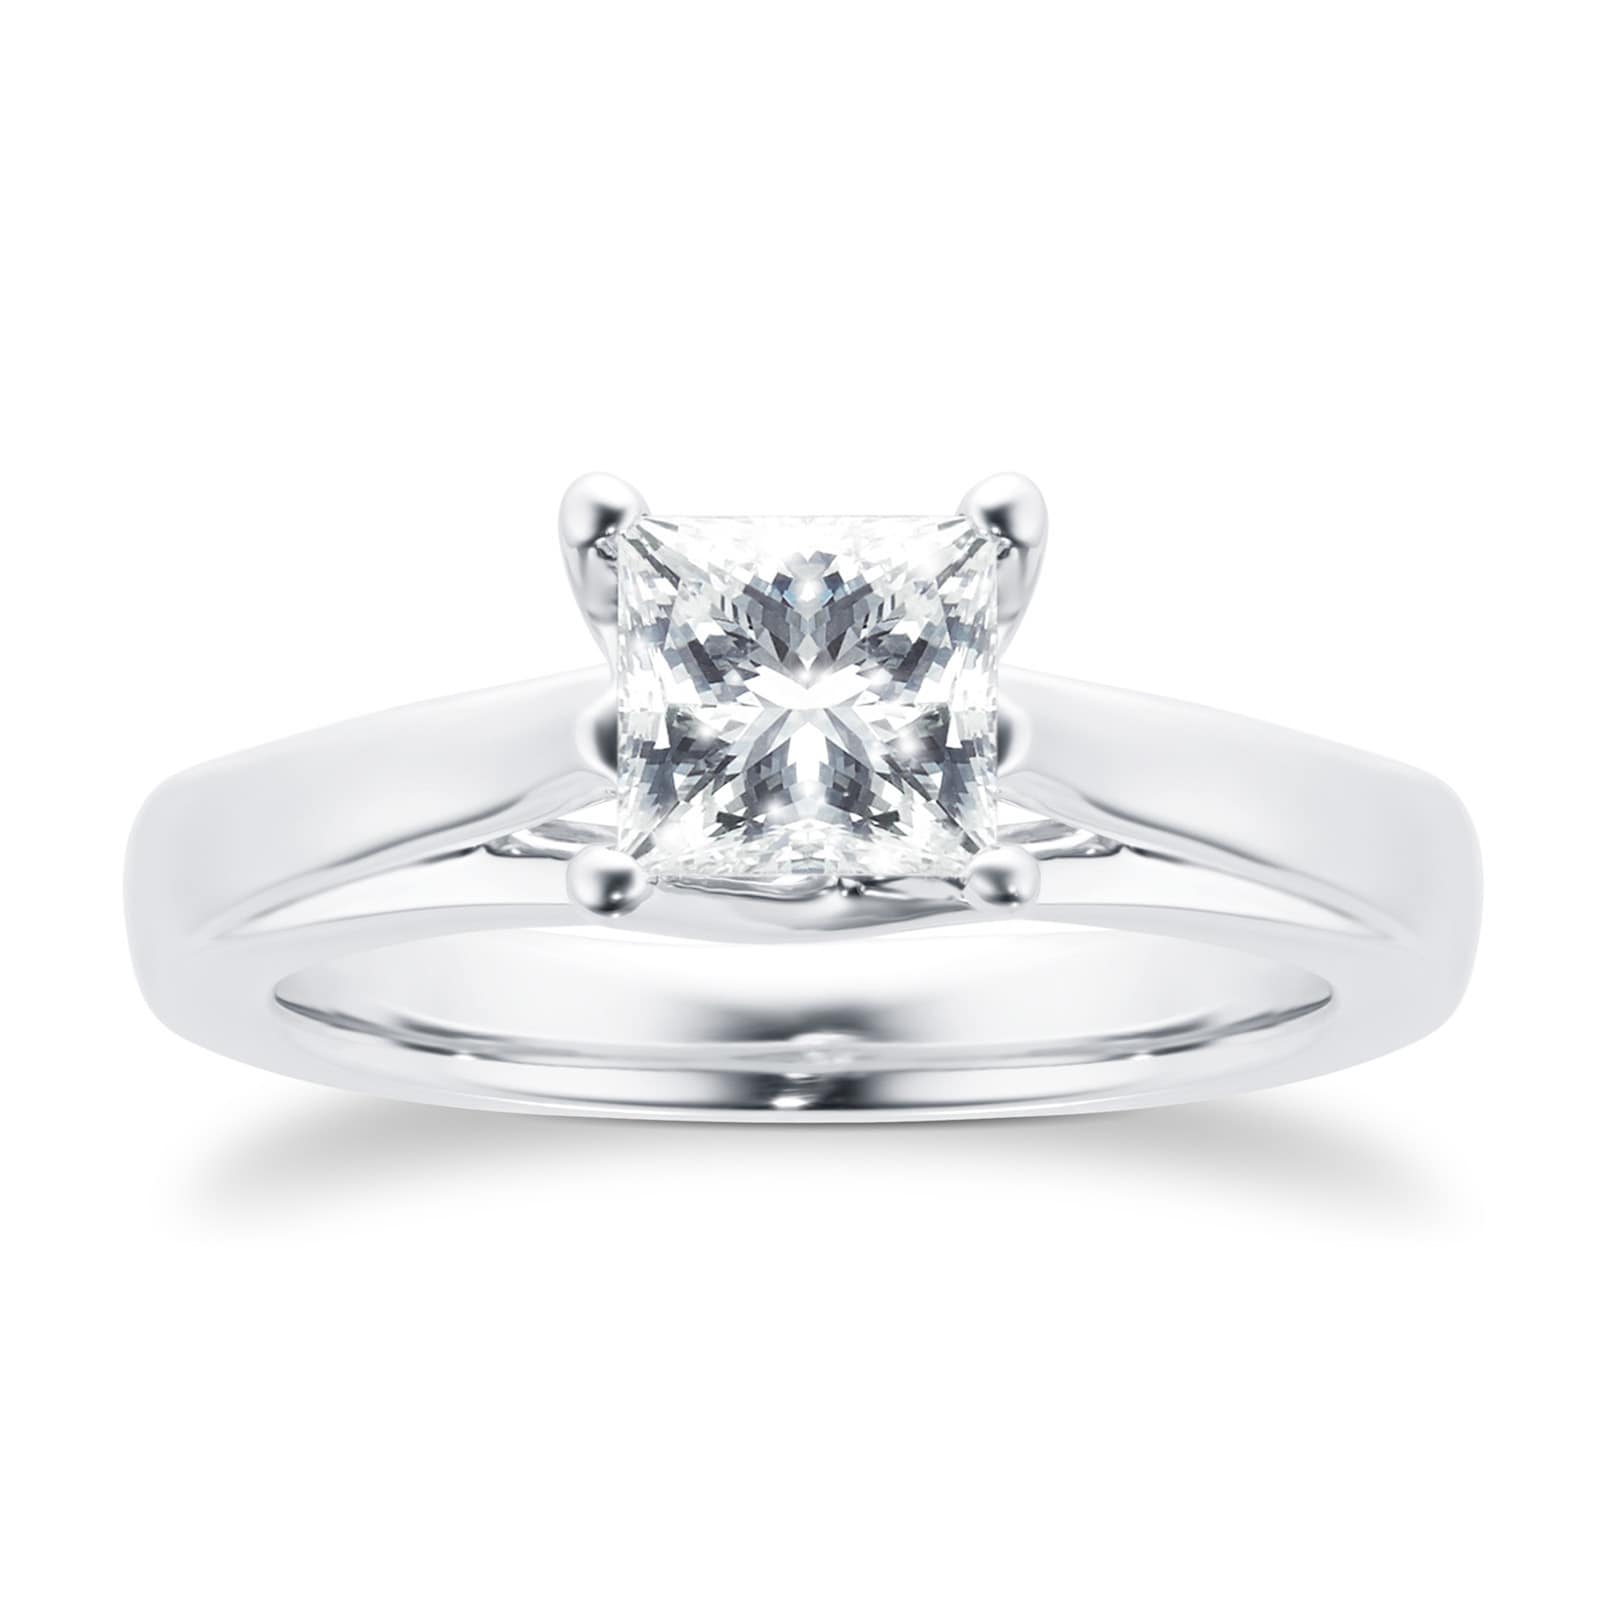 Platinum Princess Cut 1.00 Carat 88 Facet Diamond Ring - Ring Size N